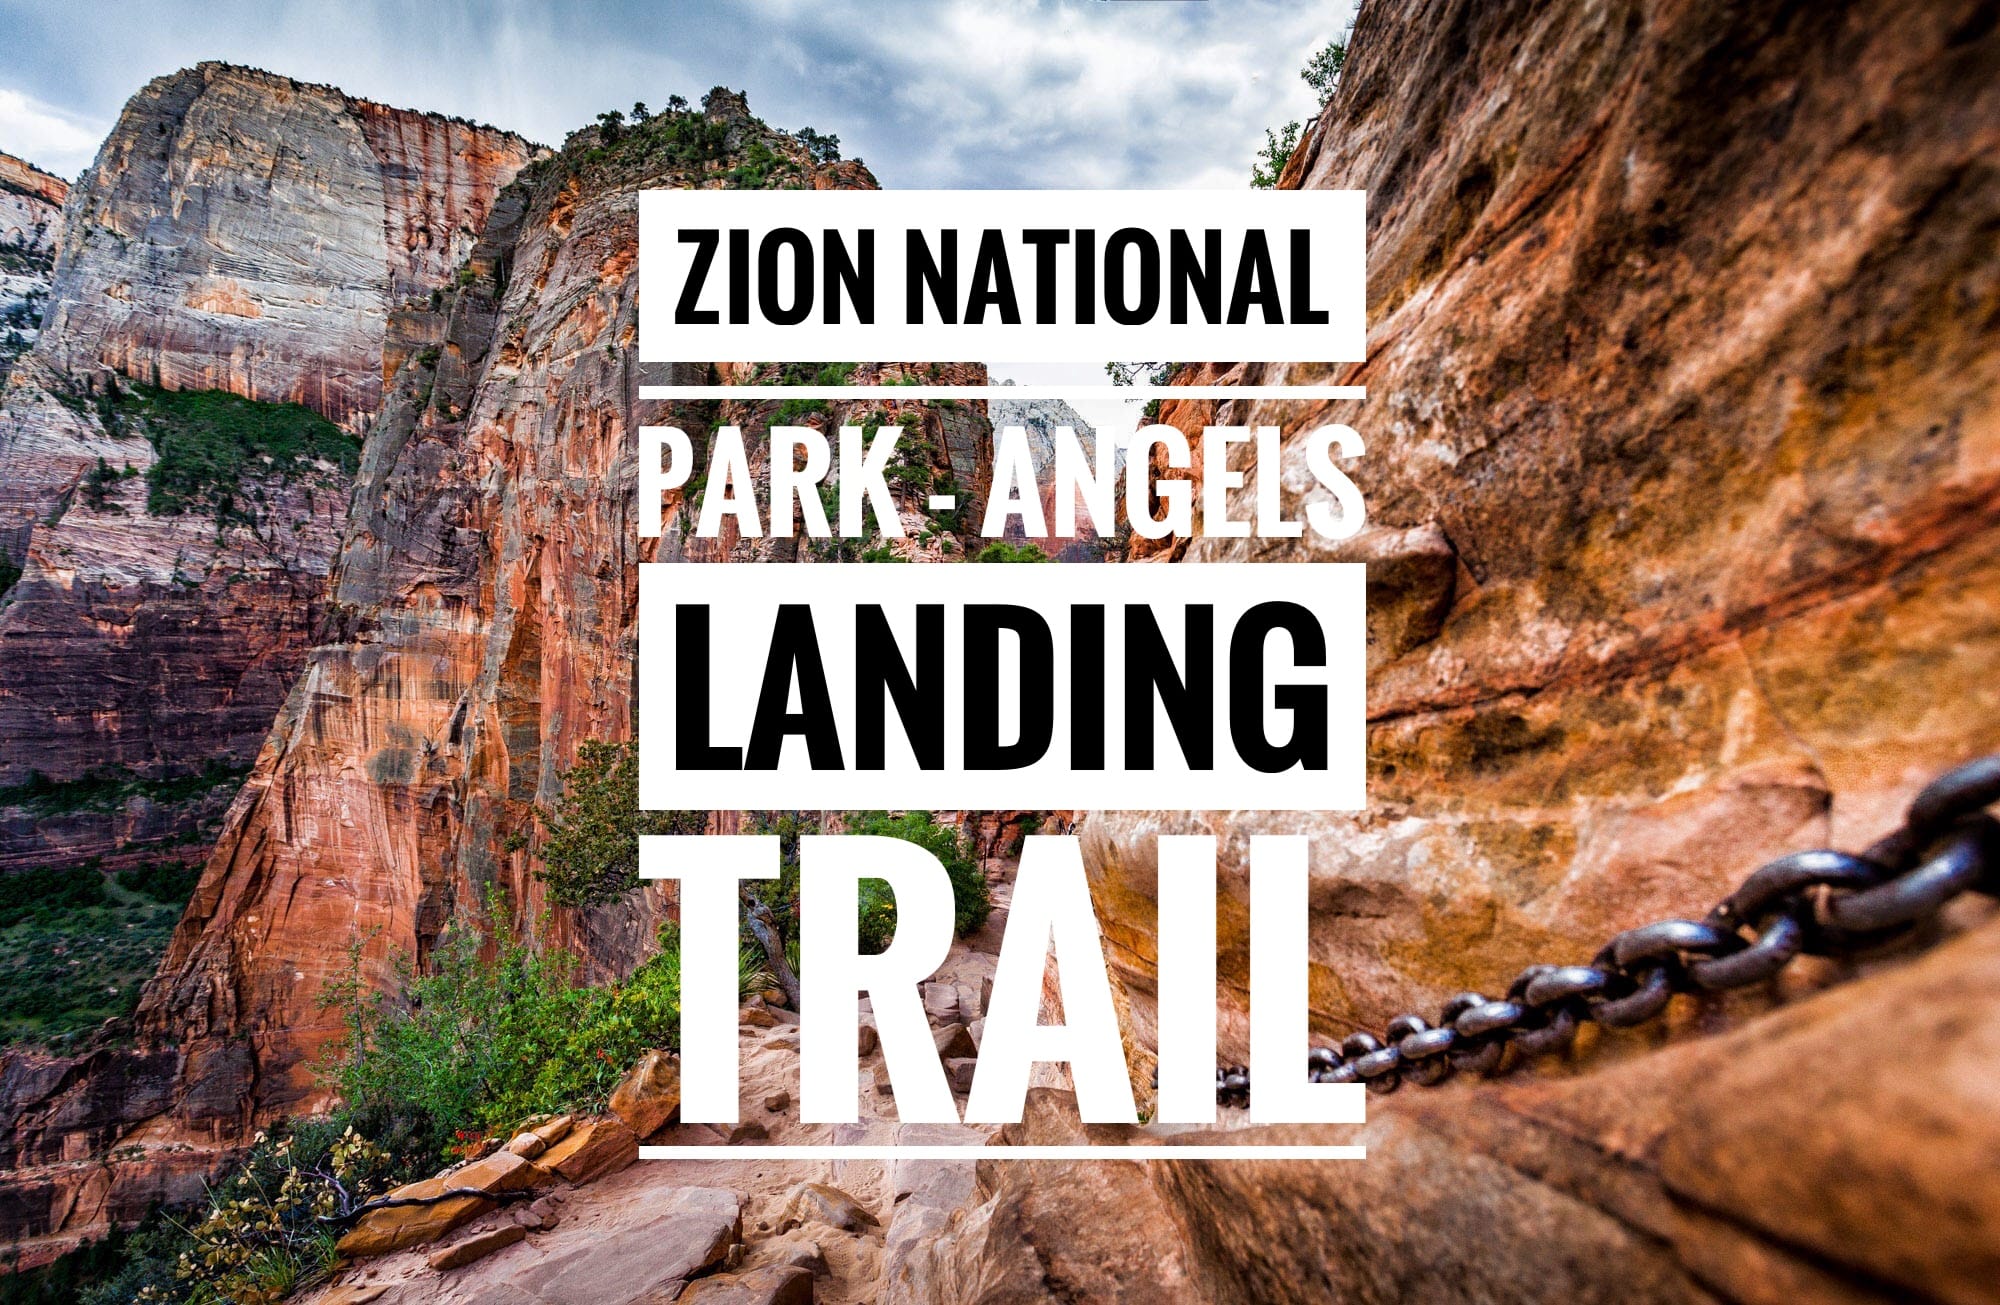 Zion National Park – Nichts für schwache Nerven